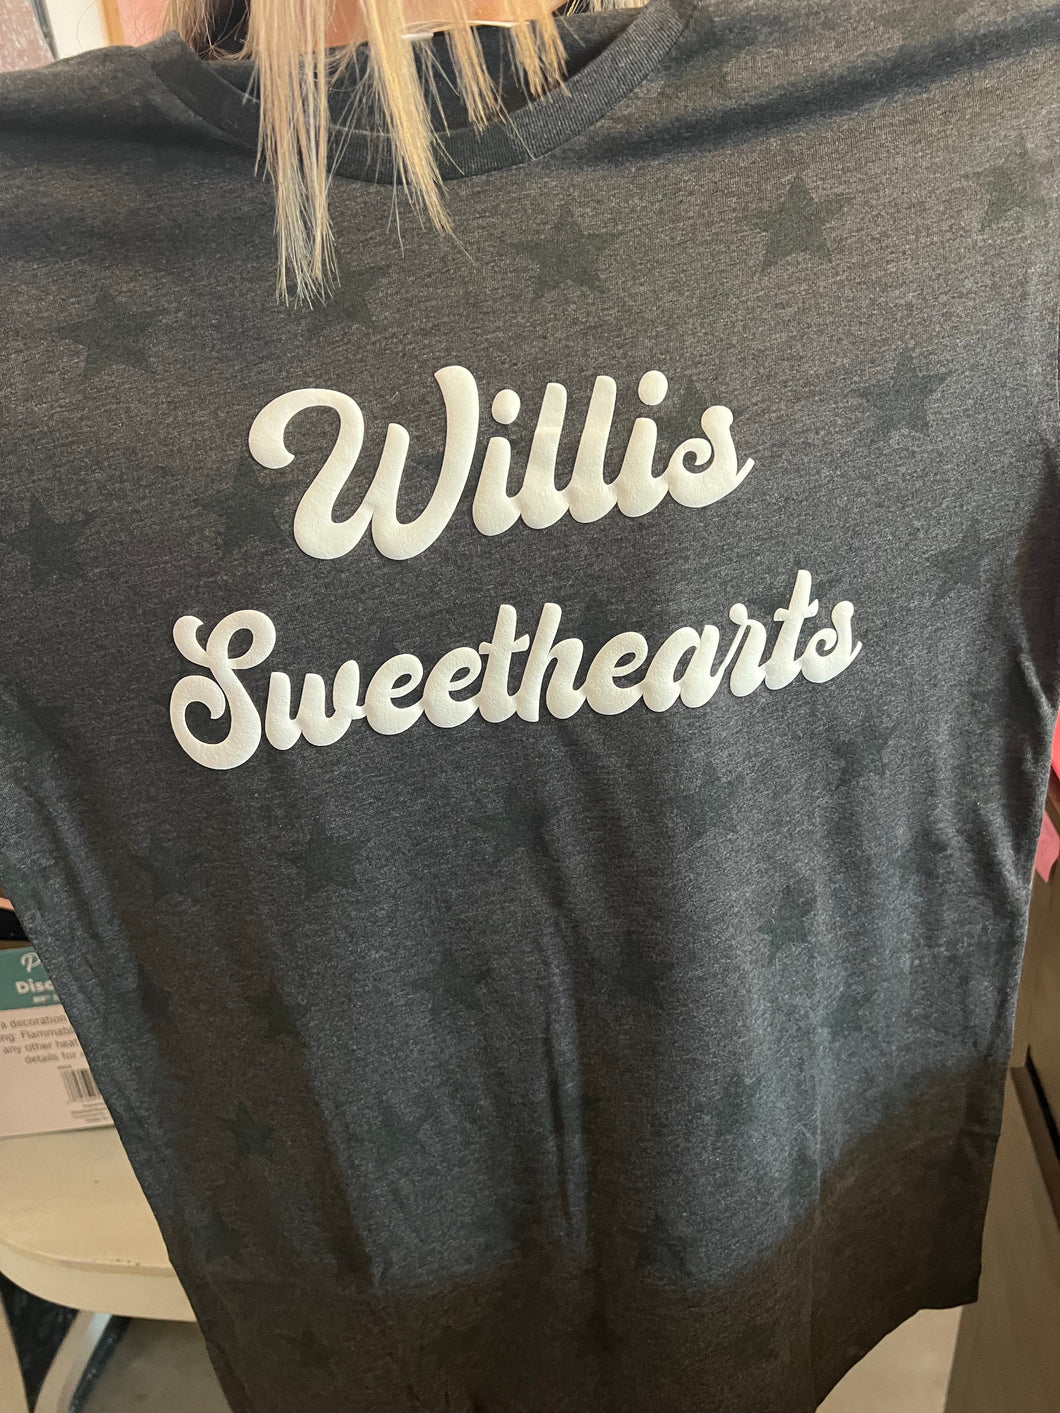 Willis Sweethearts Gray or Black Shirt (no stars)